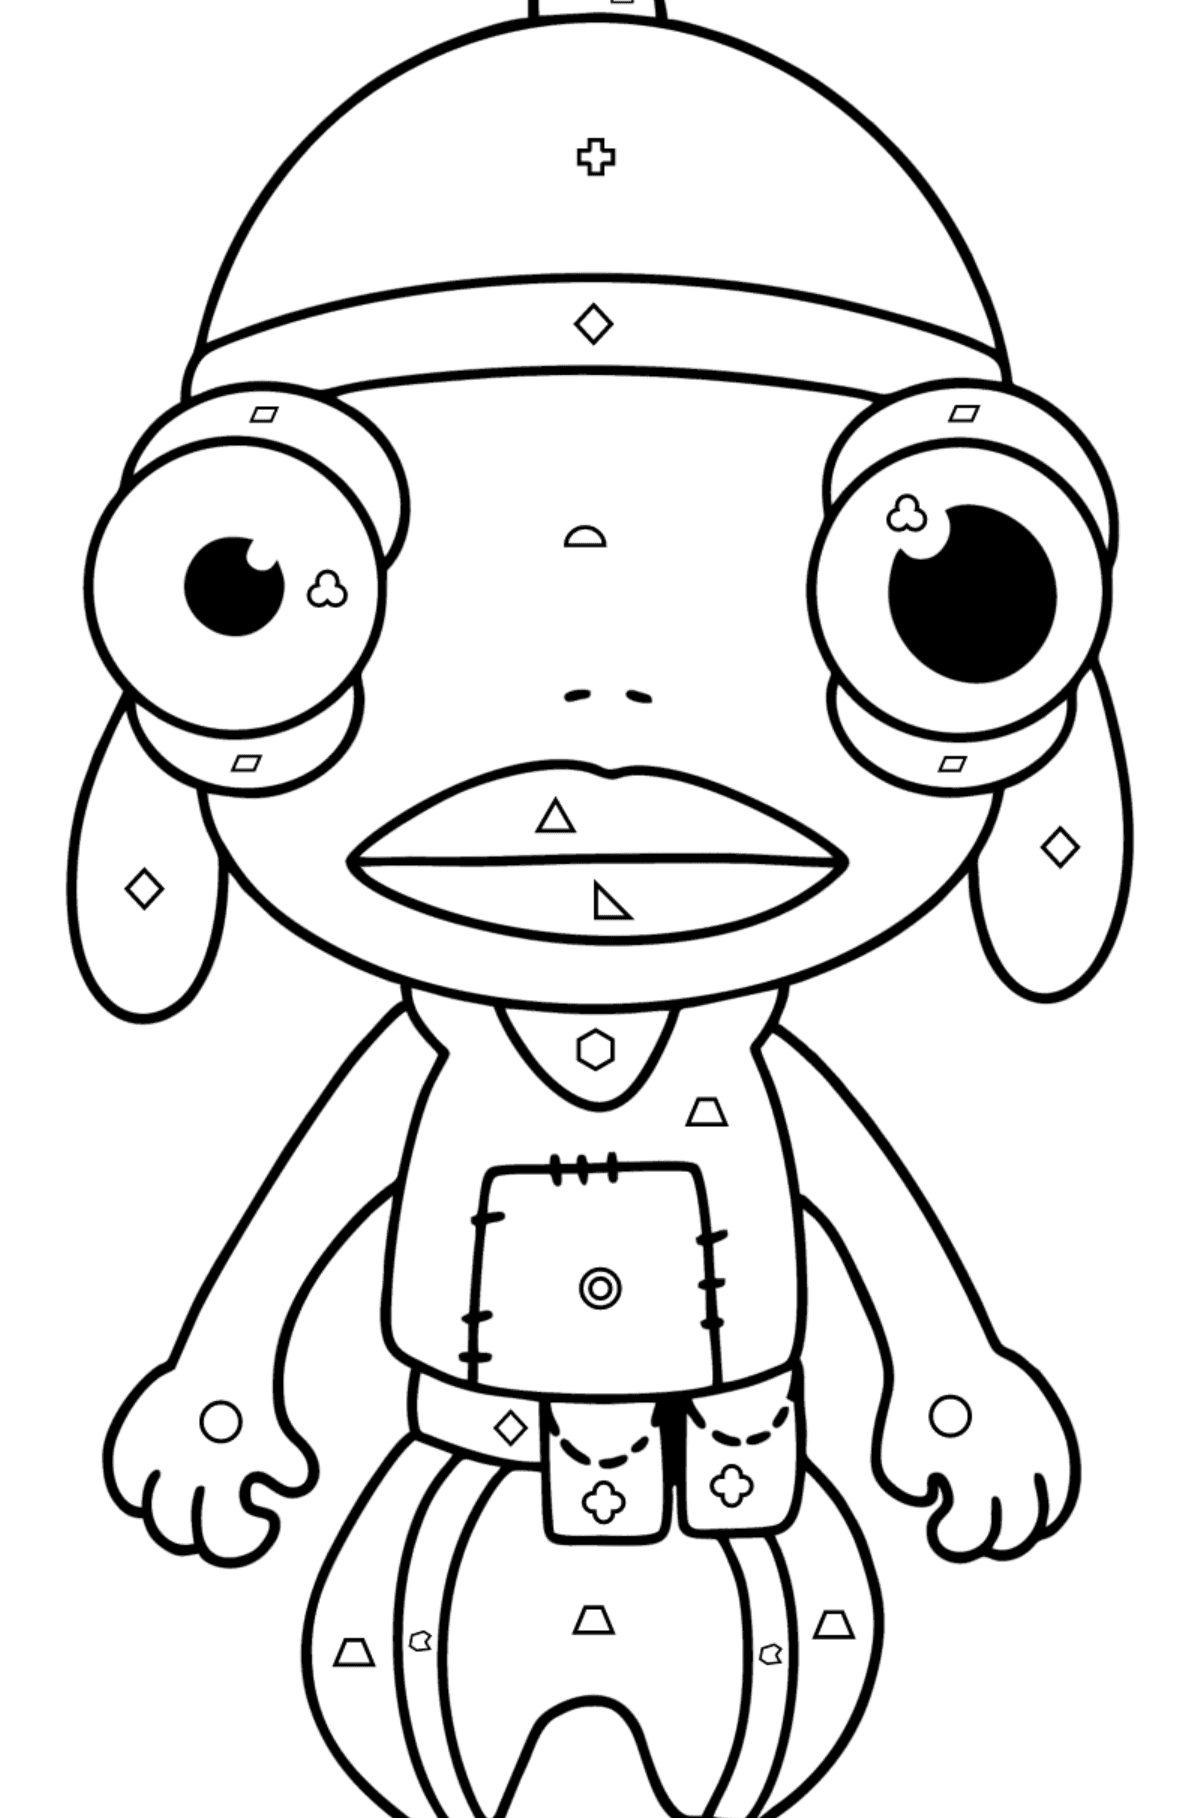 Раскраска Фортнайт Карась (Funko POP Fishstick) - Картинка высокого качества для Детей